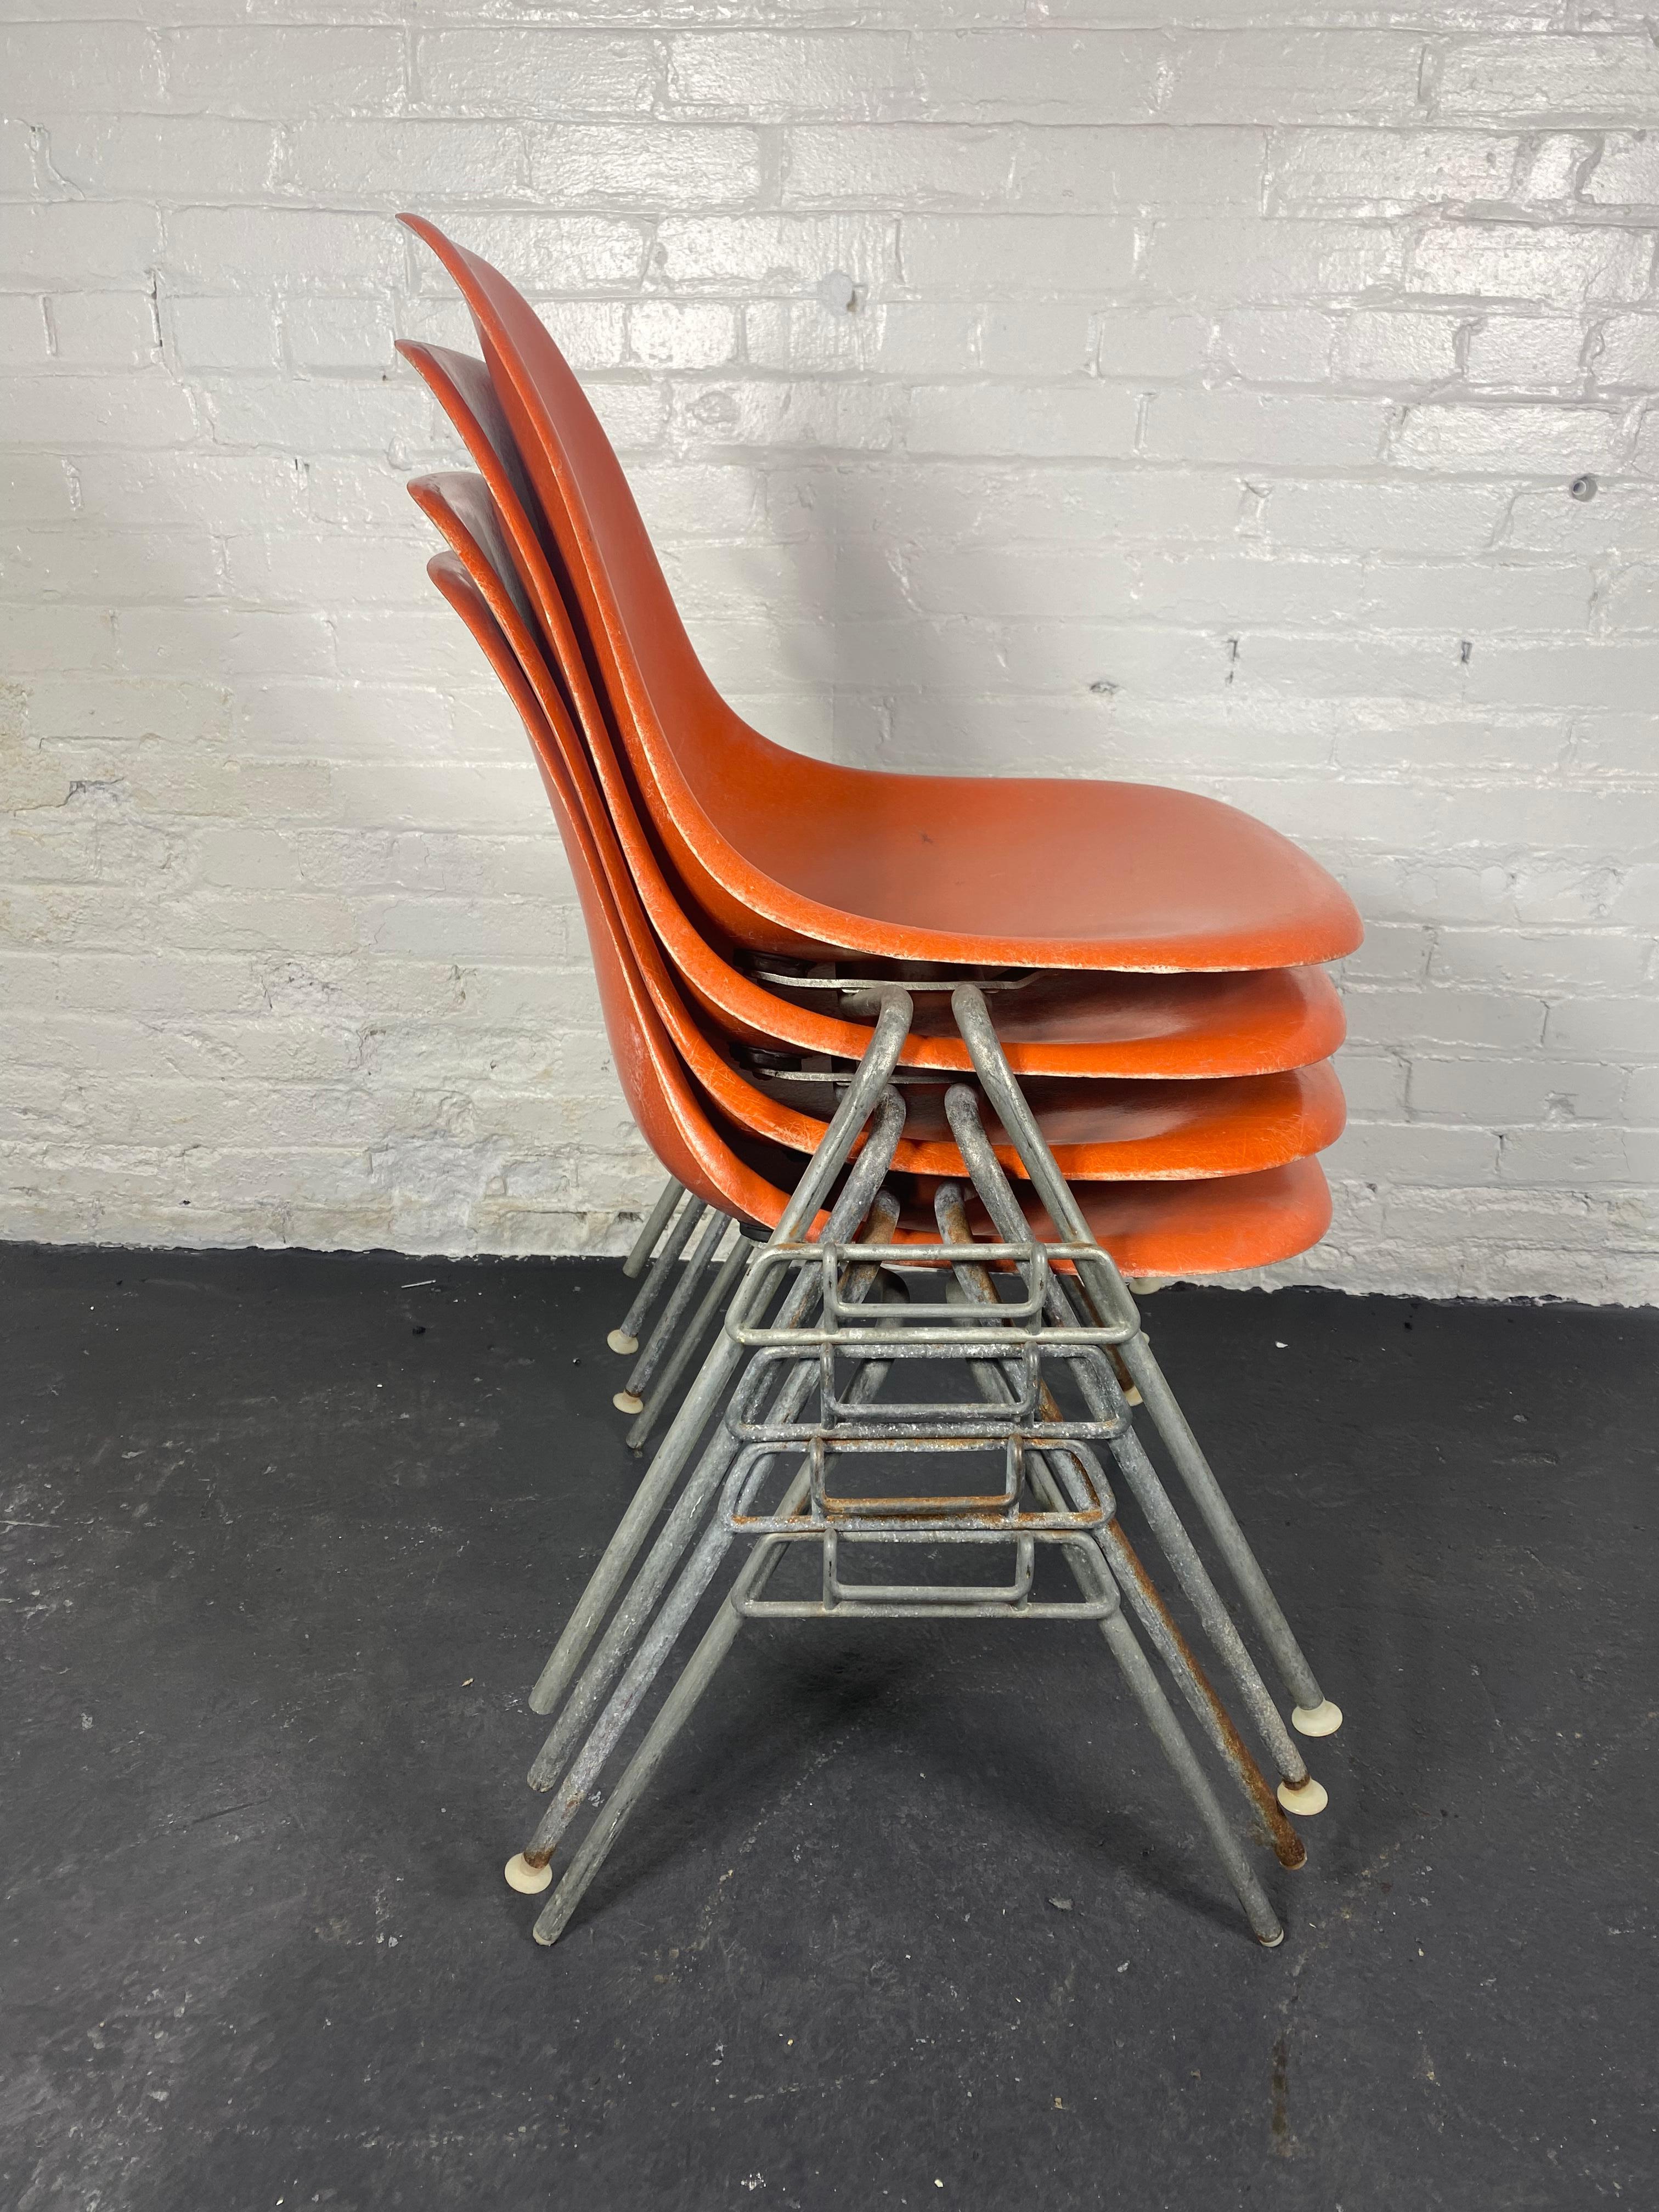 Großartiger Satz von 4 stapelbaren Esszimmerstühlen von Charles & Ray Eames für Herman Miller, klassisches modernes Design aus der Mitte des Jahrhunderts. um 1970 (Ende der 1960er Jahre) 
Die Stühle sind auf der Unterseite mit 